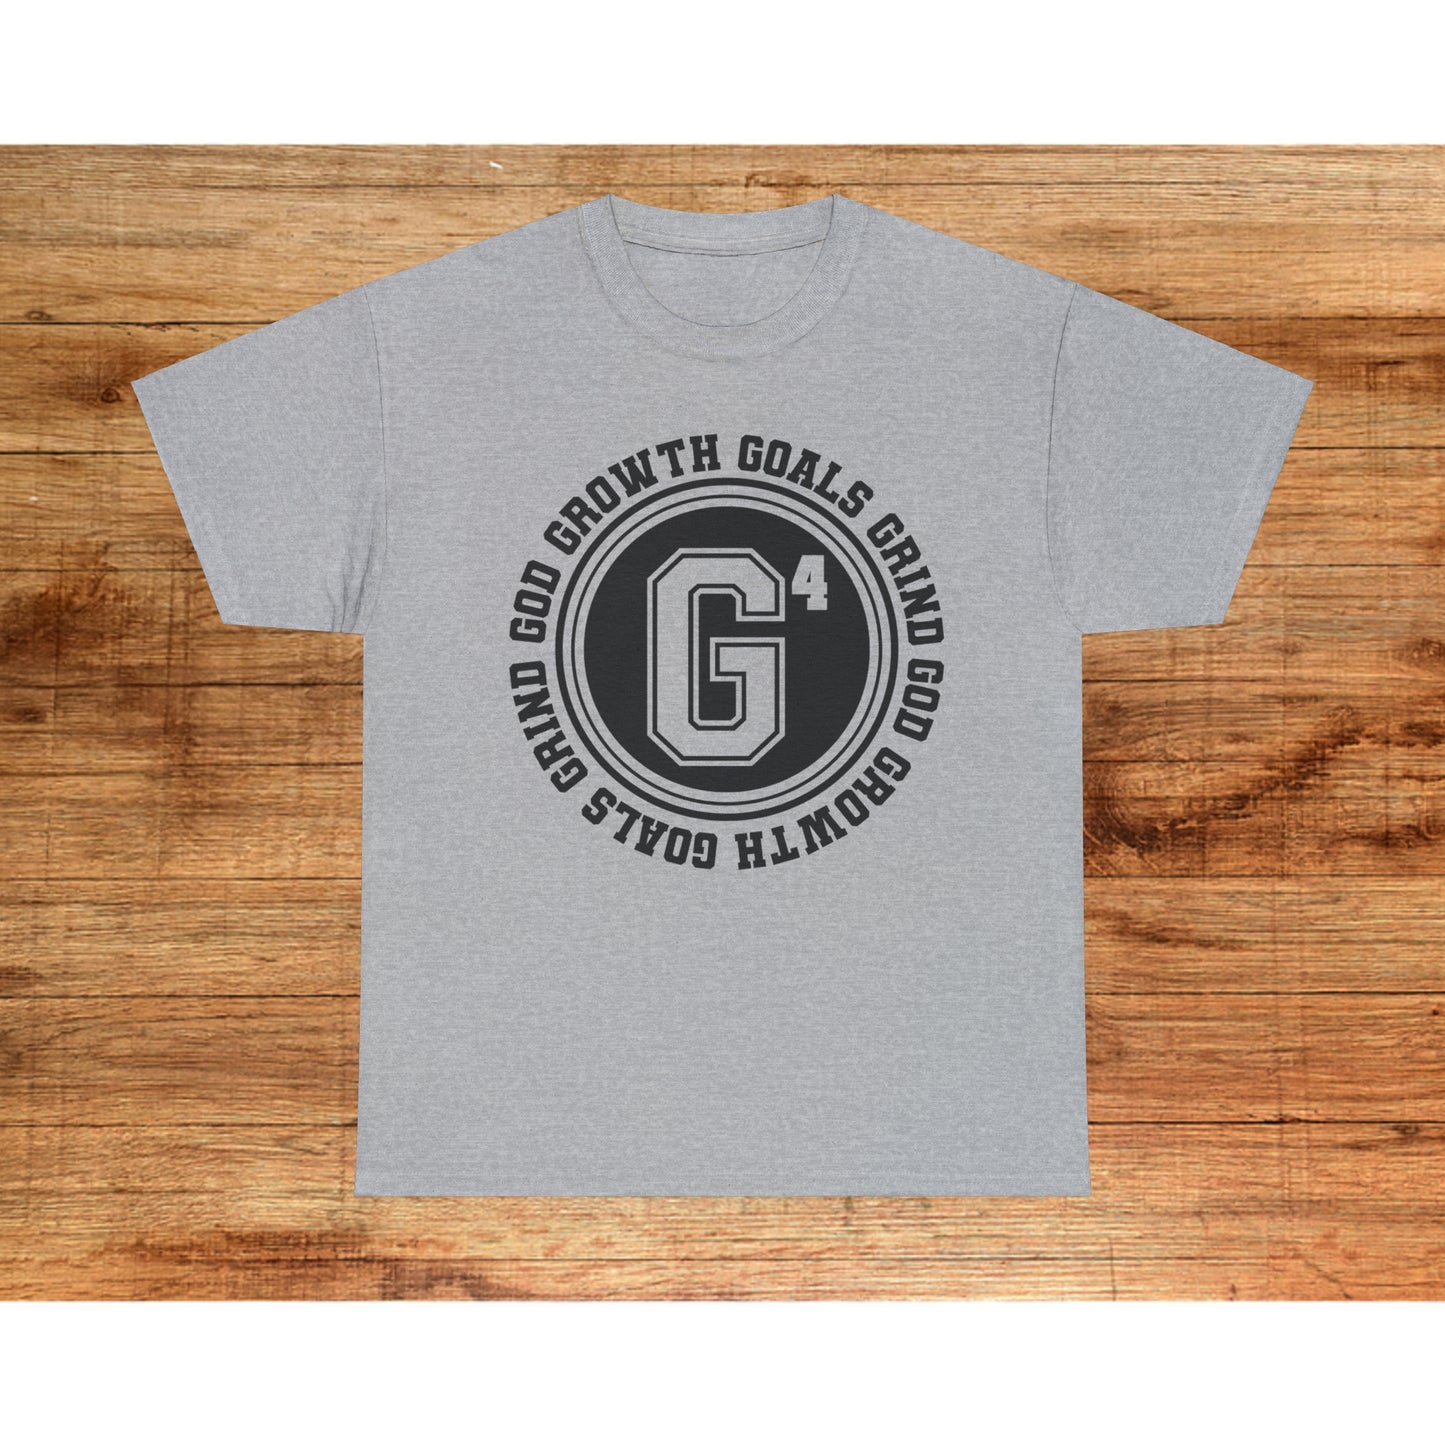 God Goals Growth Grind T-shirt